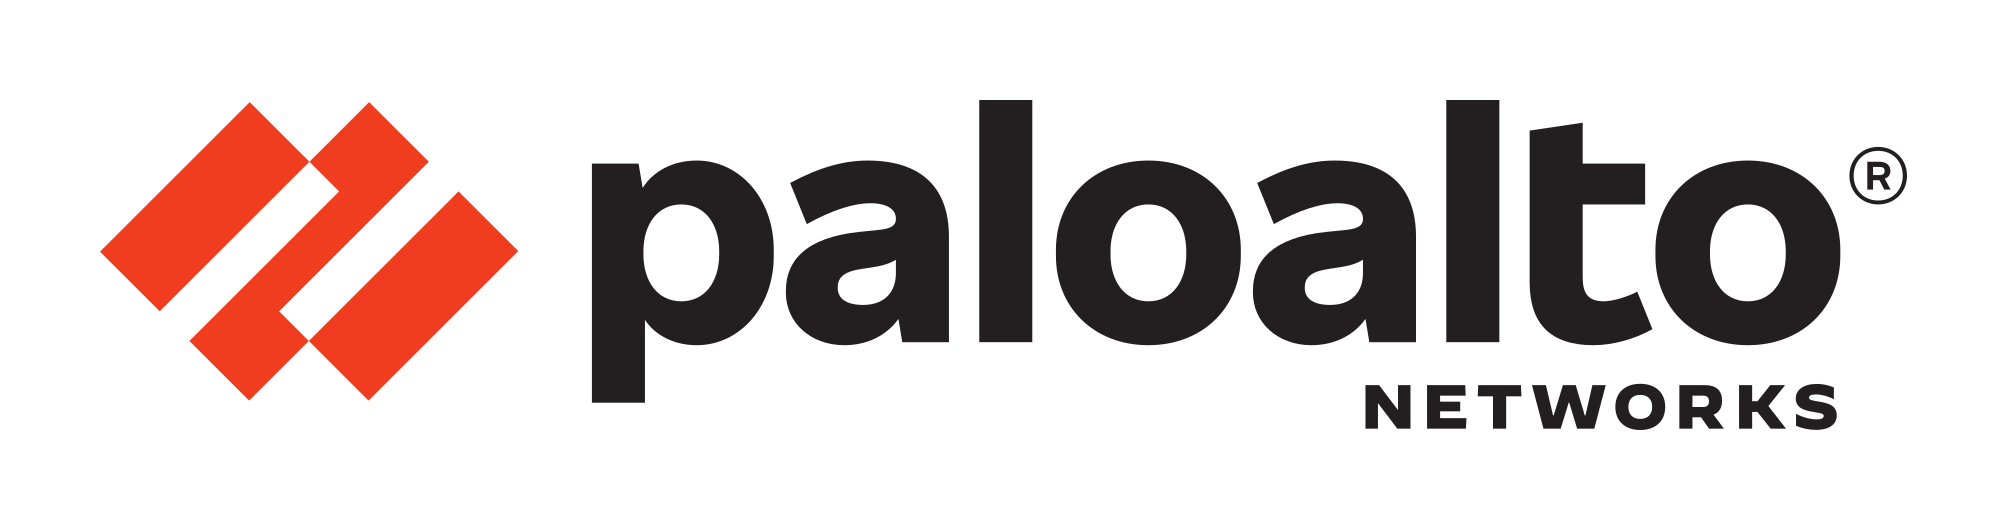 Palo Alto